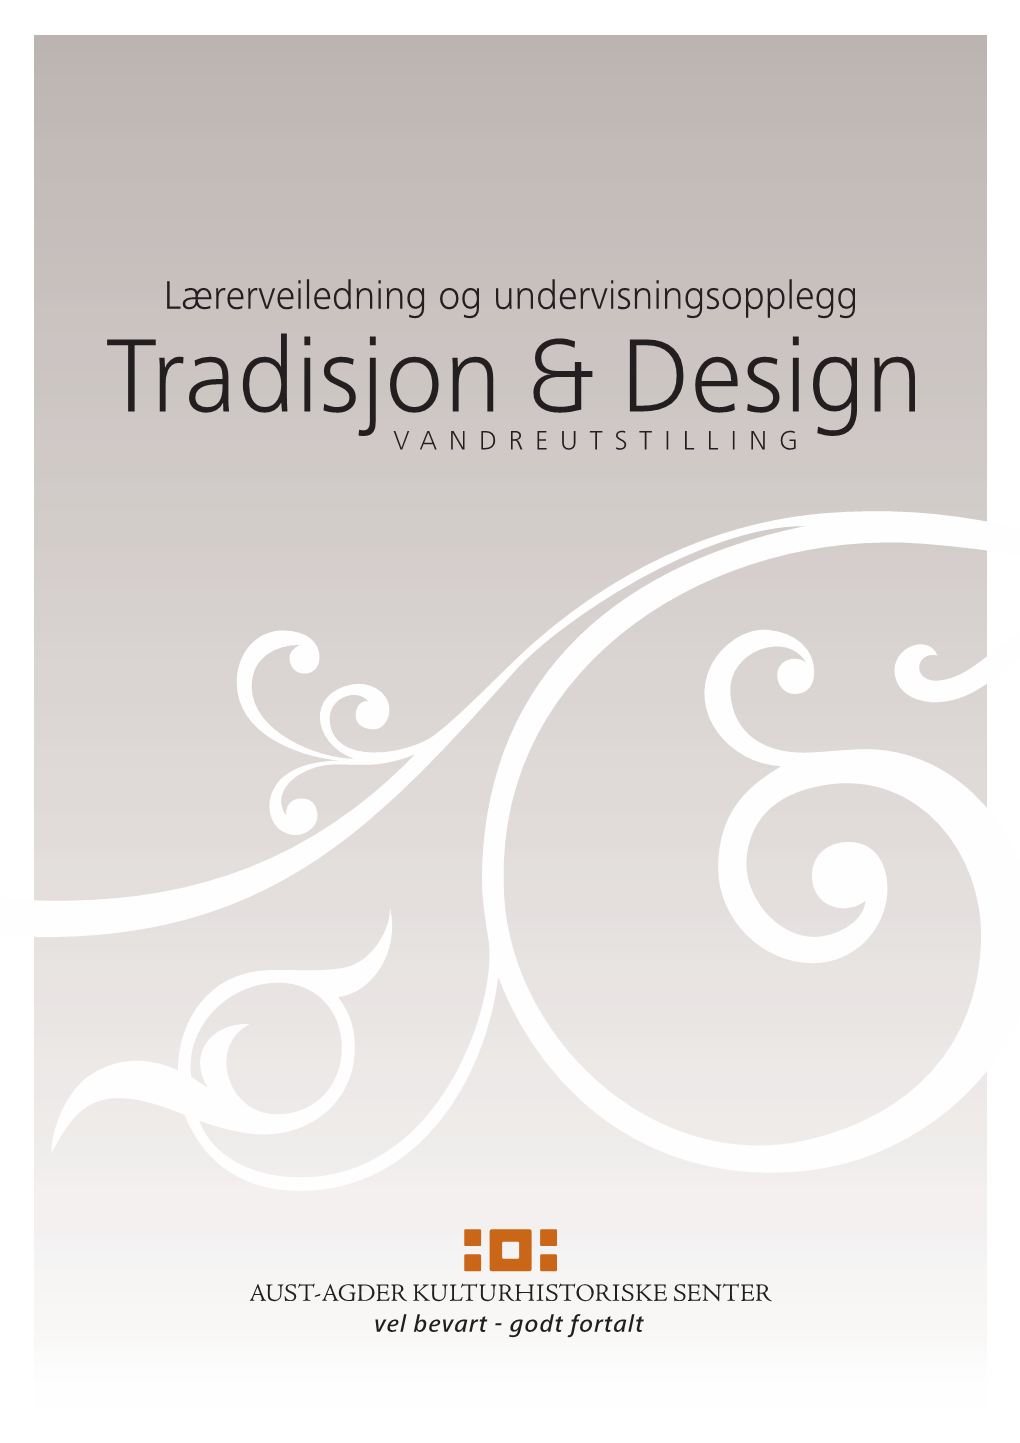 Tradisjon & Design